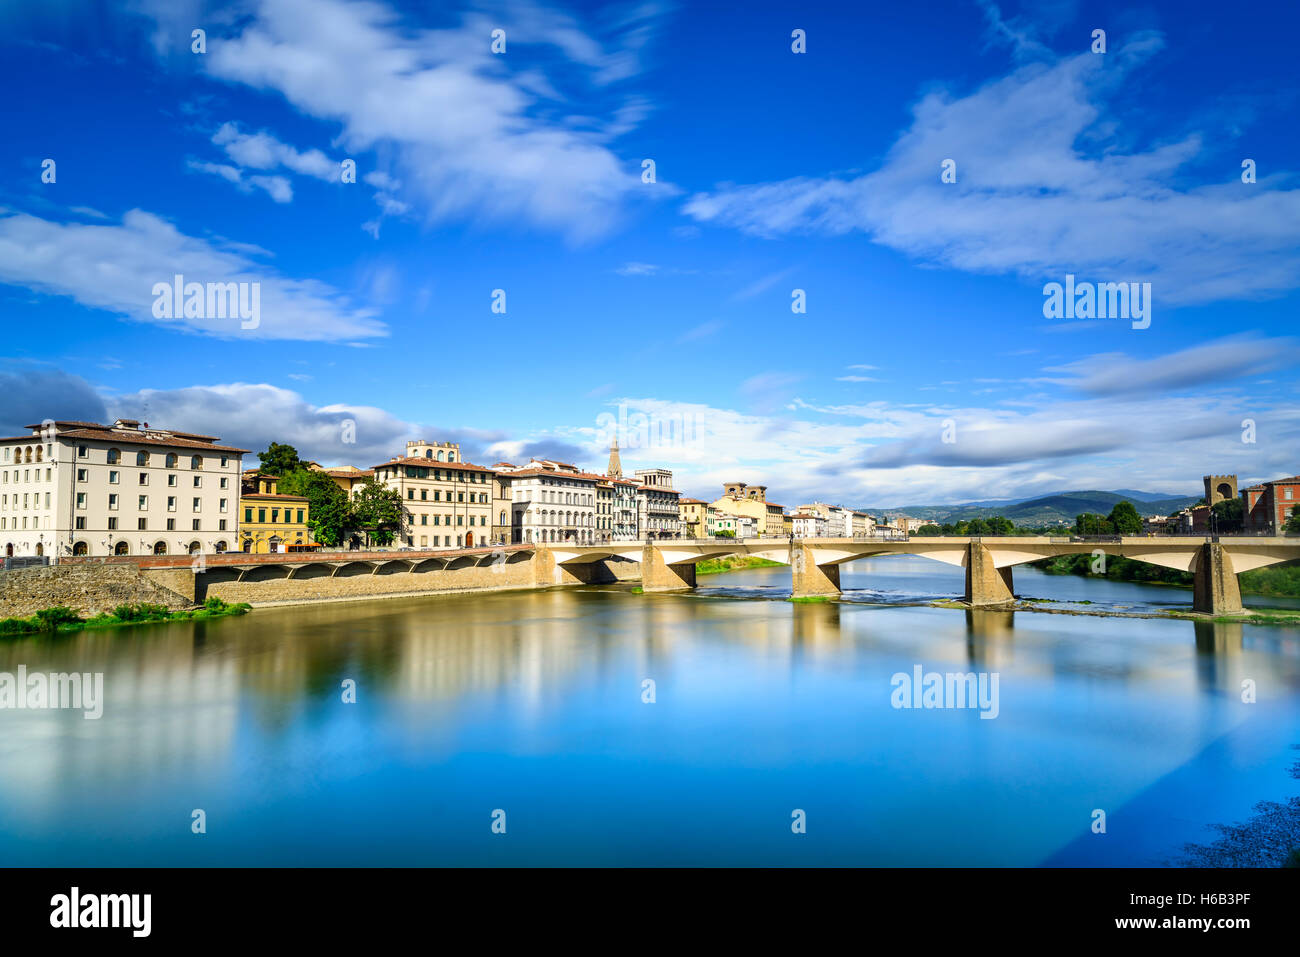 Florence ou Firenze, Ponte alle Grazie Bridge vue sur la rivière Arno, coucher de soleil paysage avec réflexion. La toscane, italie. Longue exp Banque D'Images